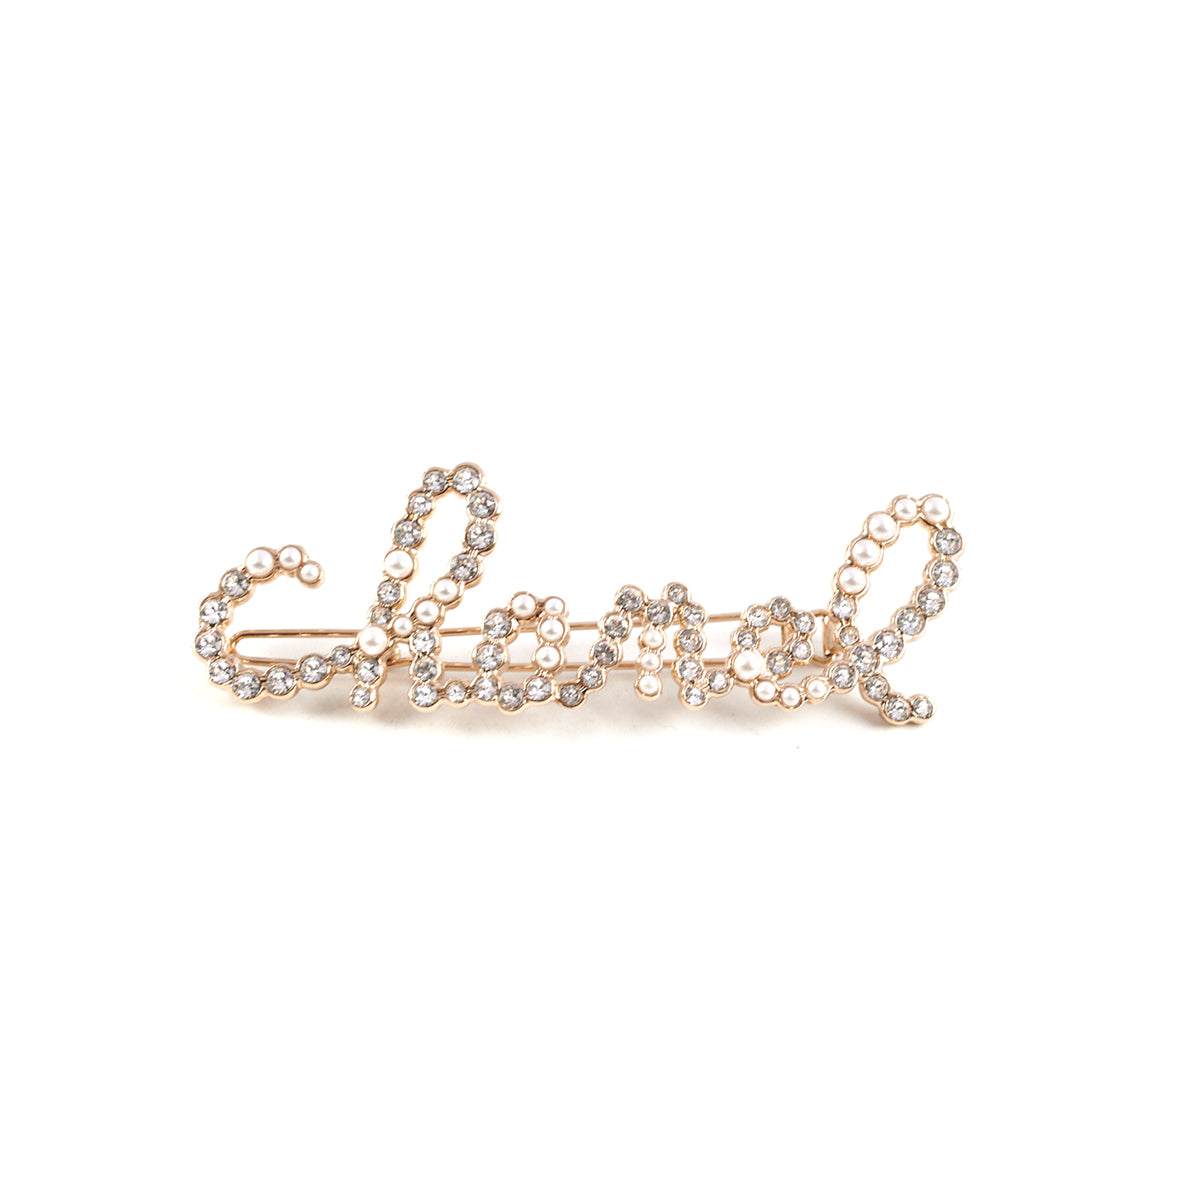 Chanel Hair Clip Rhinestone Costume Pearls - THE PURSE AFFAIR